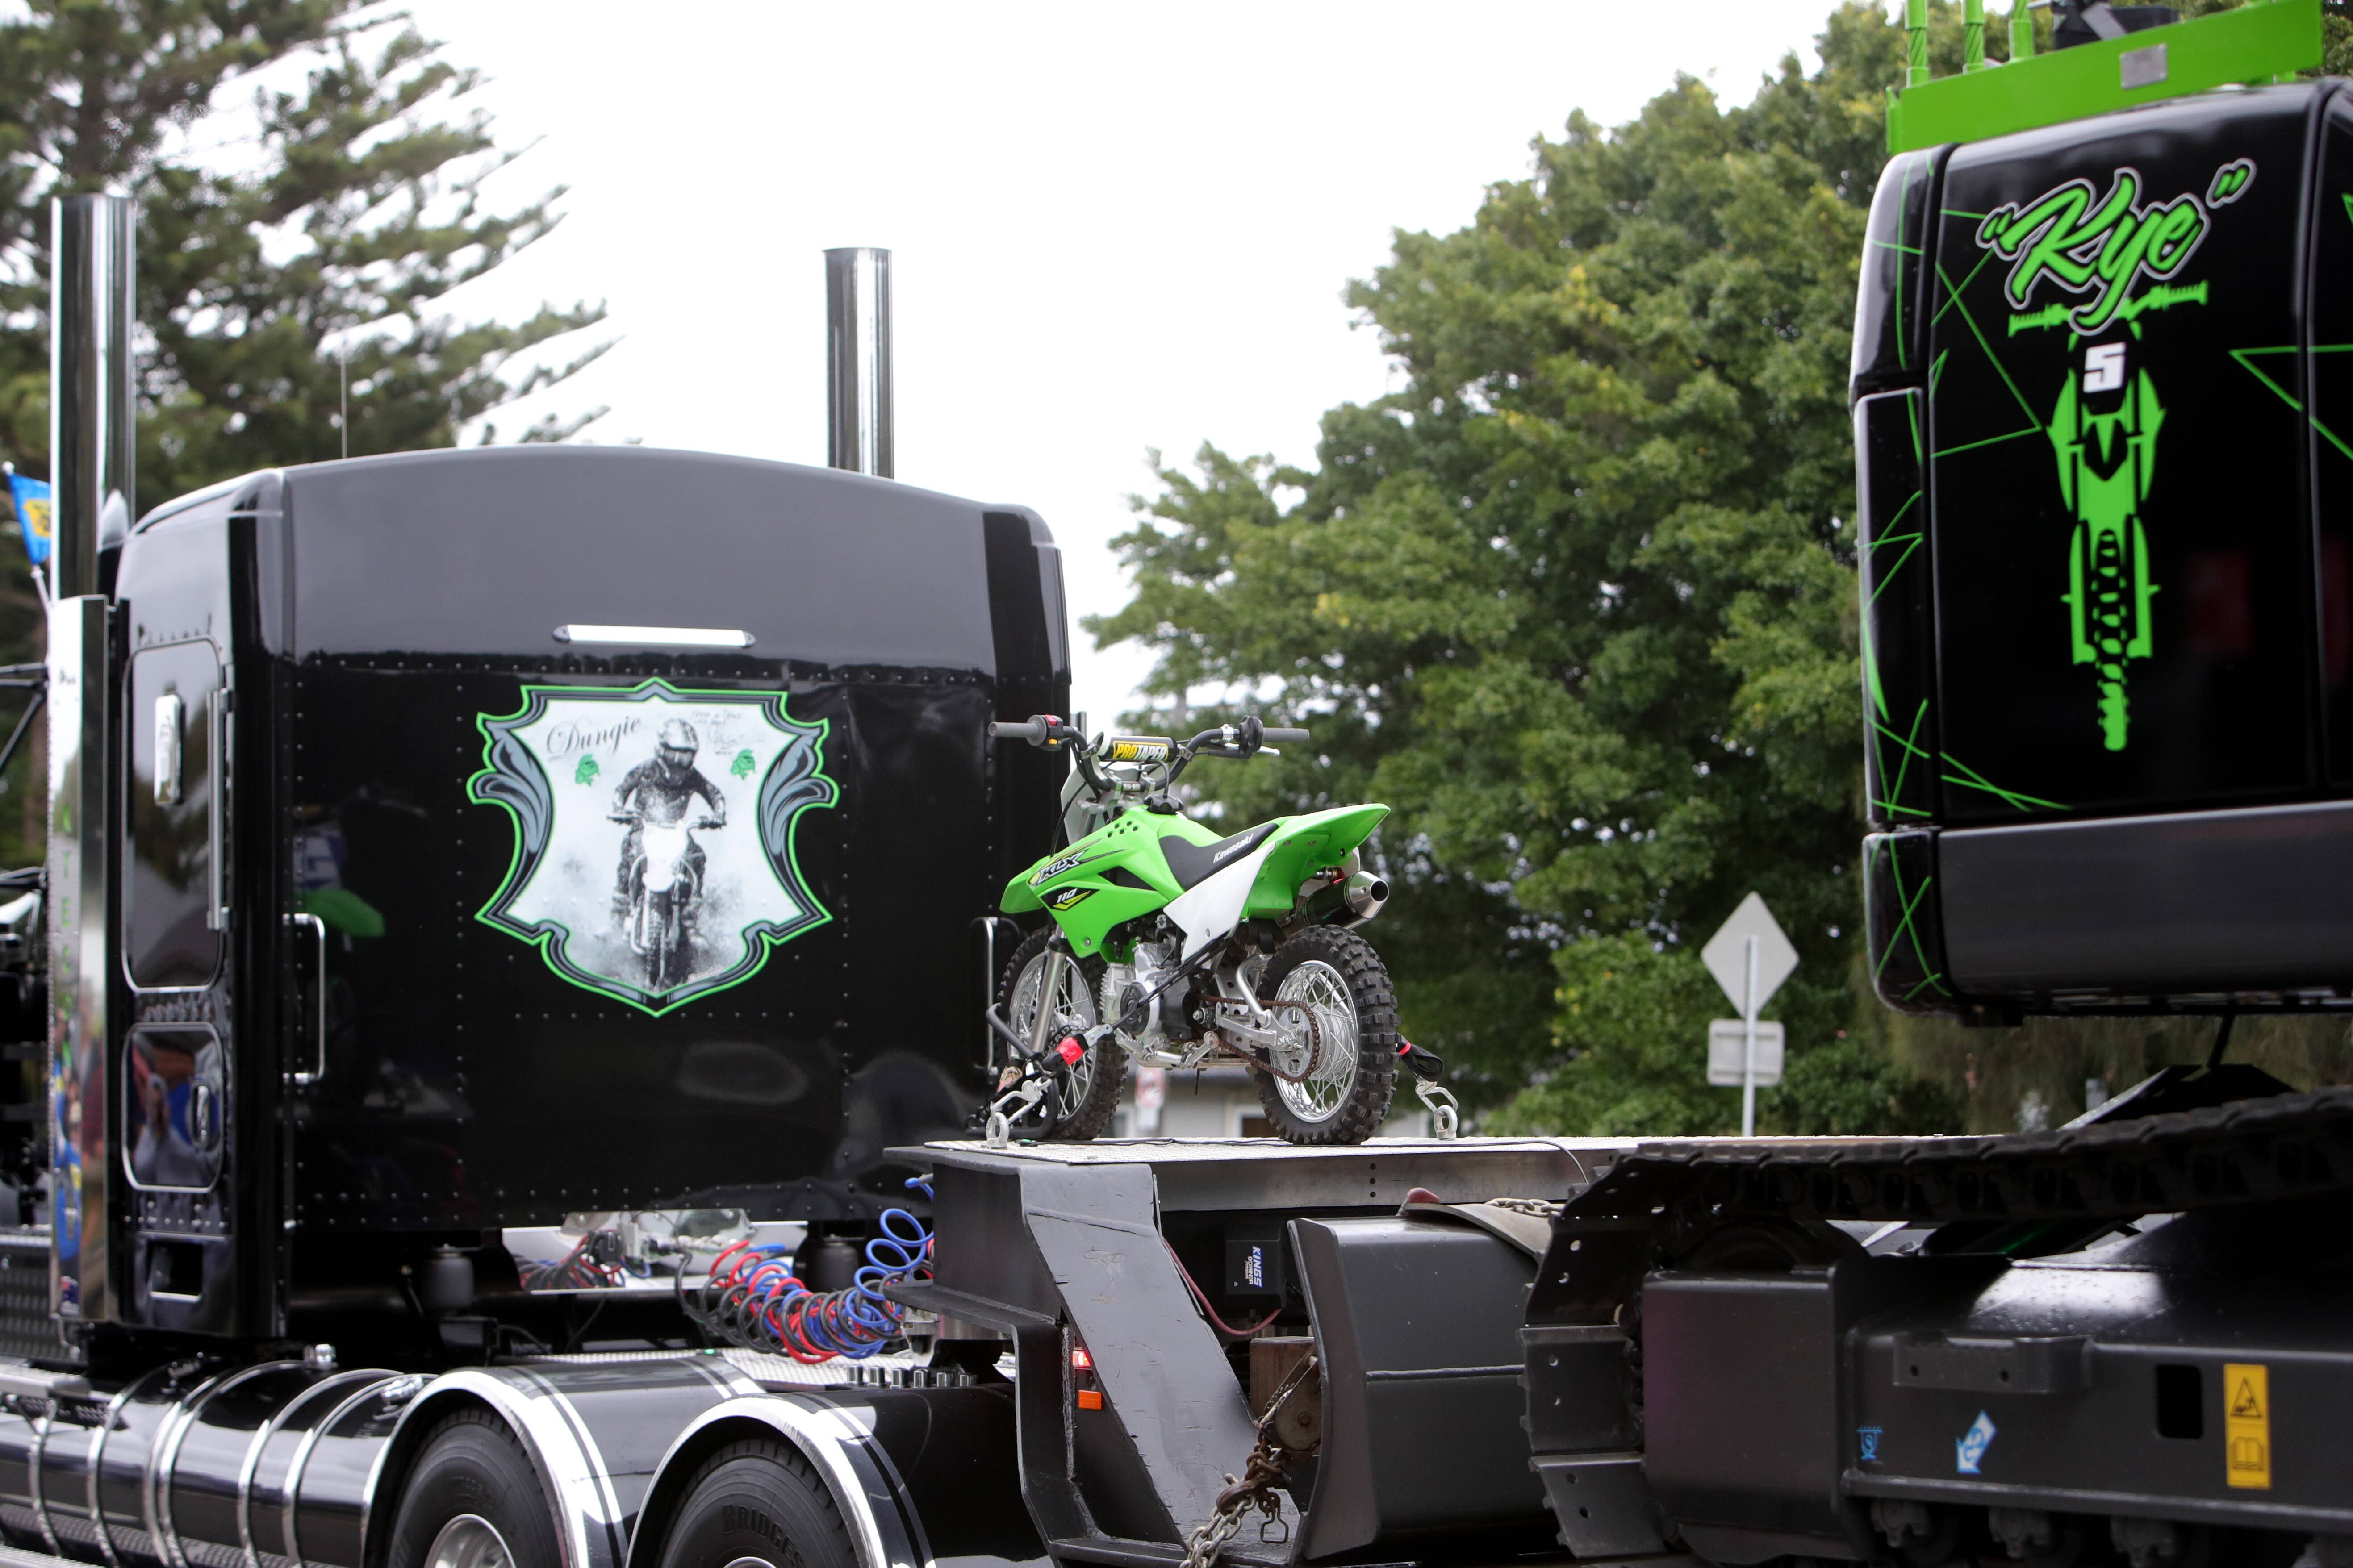 Monster Truck, Monster Energy Drink Kentworth Truck, Scotla…